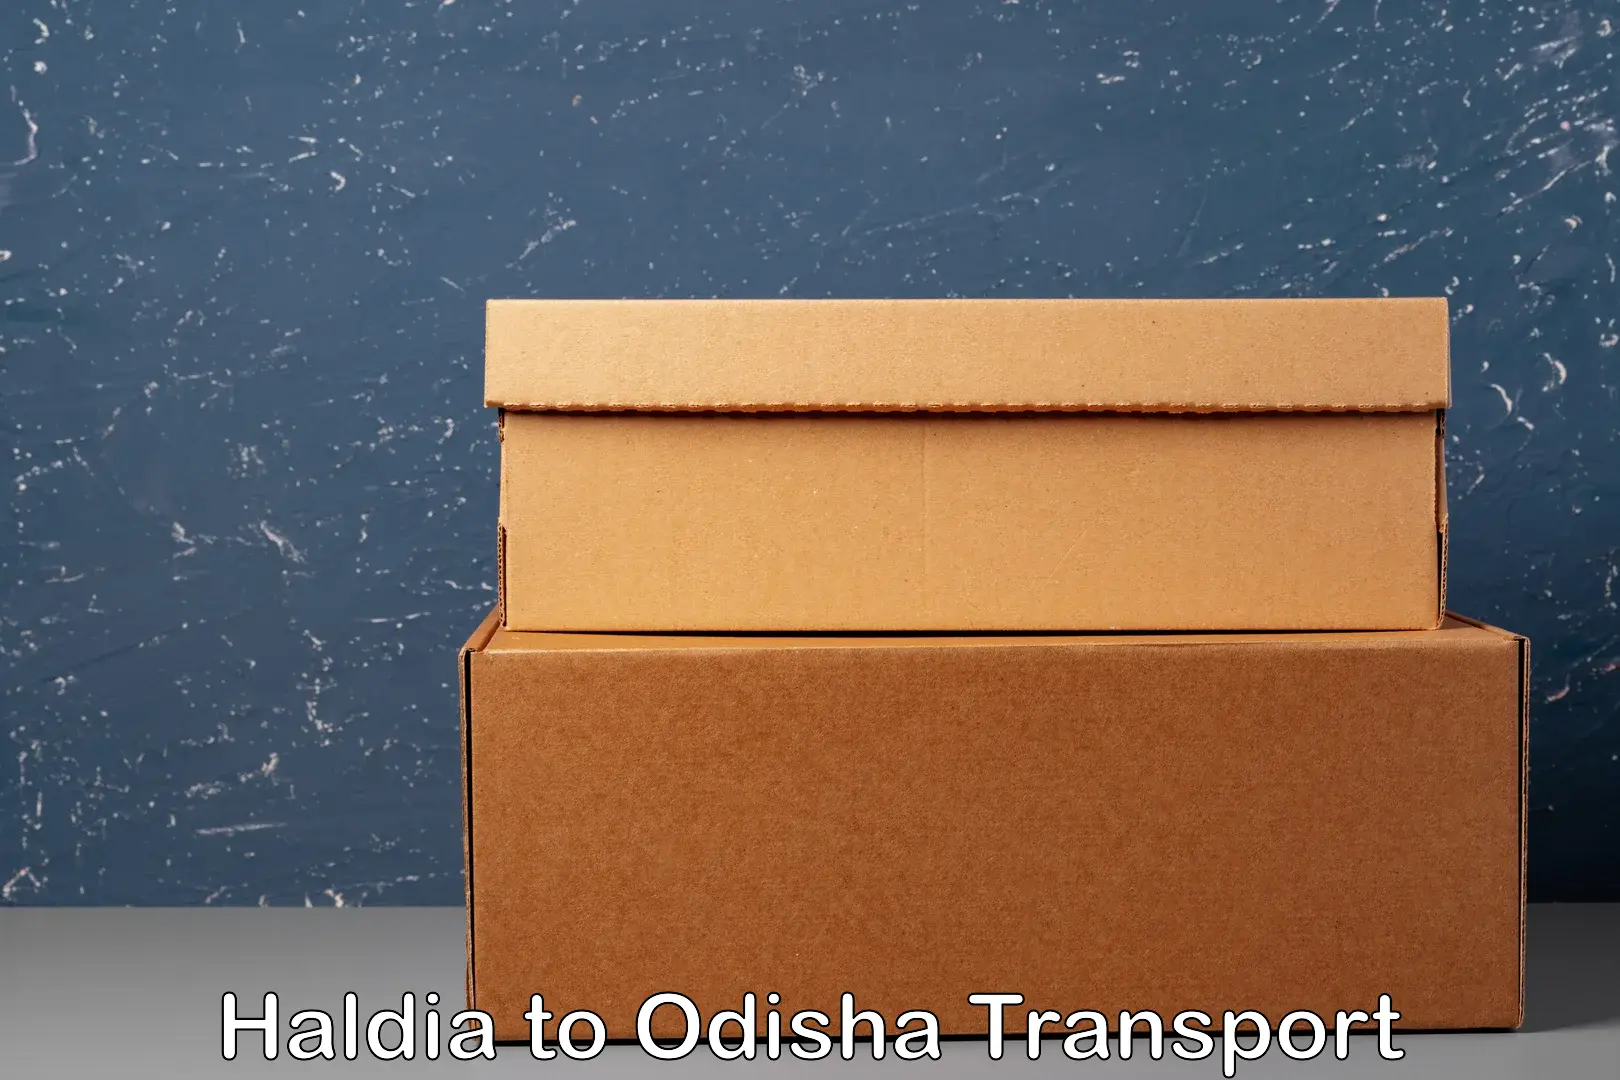 Truck transport companies in India Haldia to Paradip Port